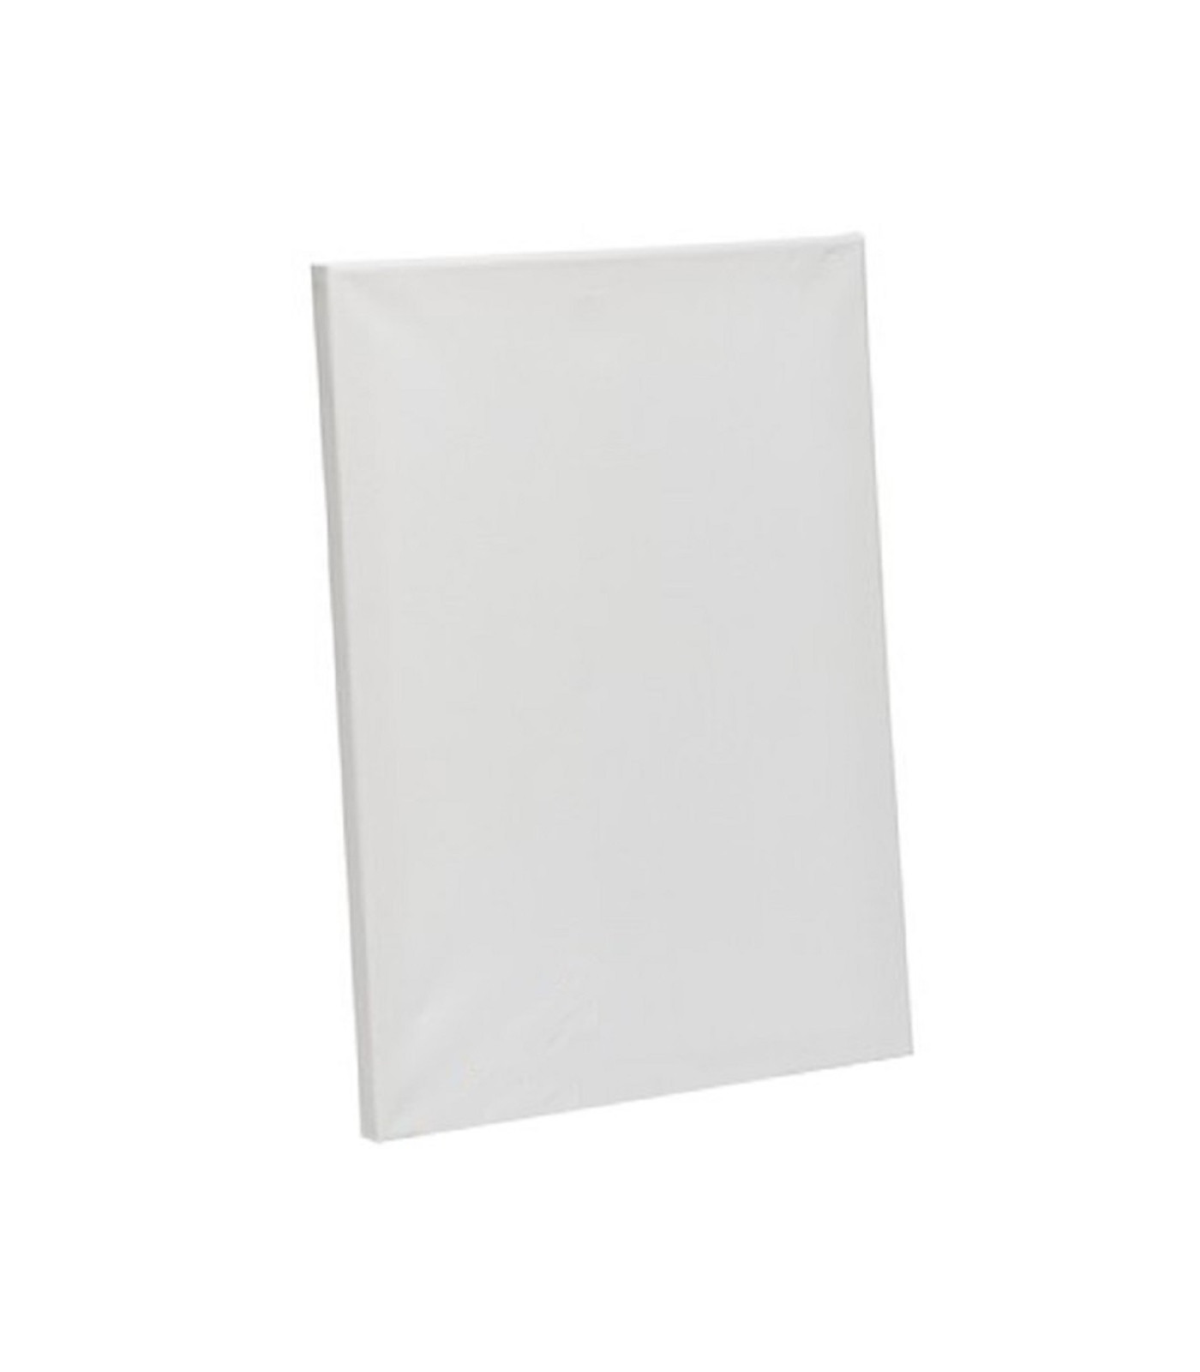 Lienzo blanco para pintar alta calidad 30 x 40 cm, 100% algodón, sin  ácidos, óptimo para oleos y pintura acrílica, ideal para pi